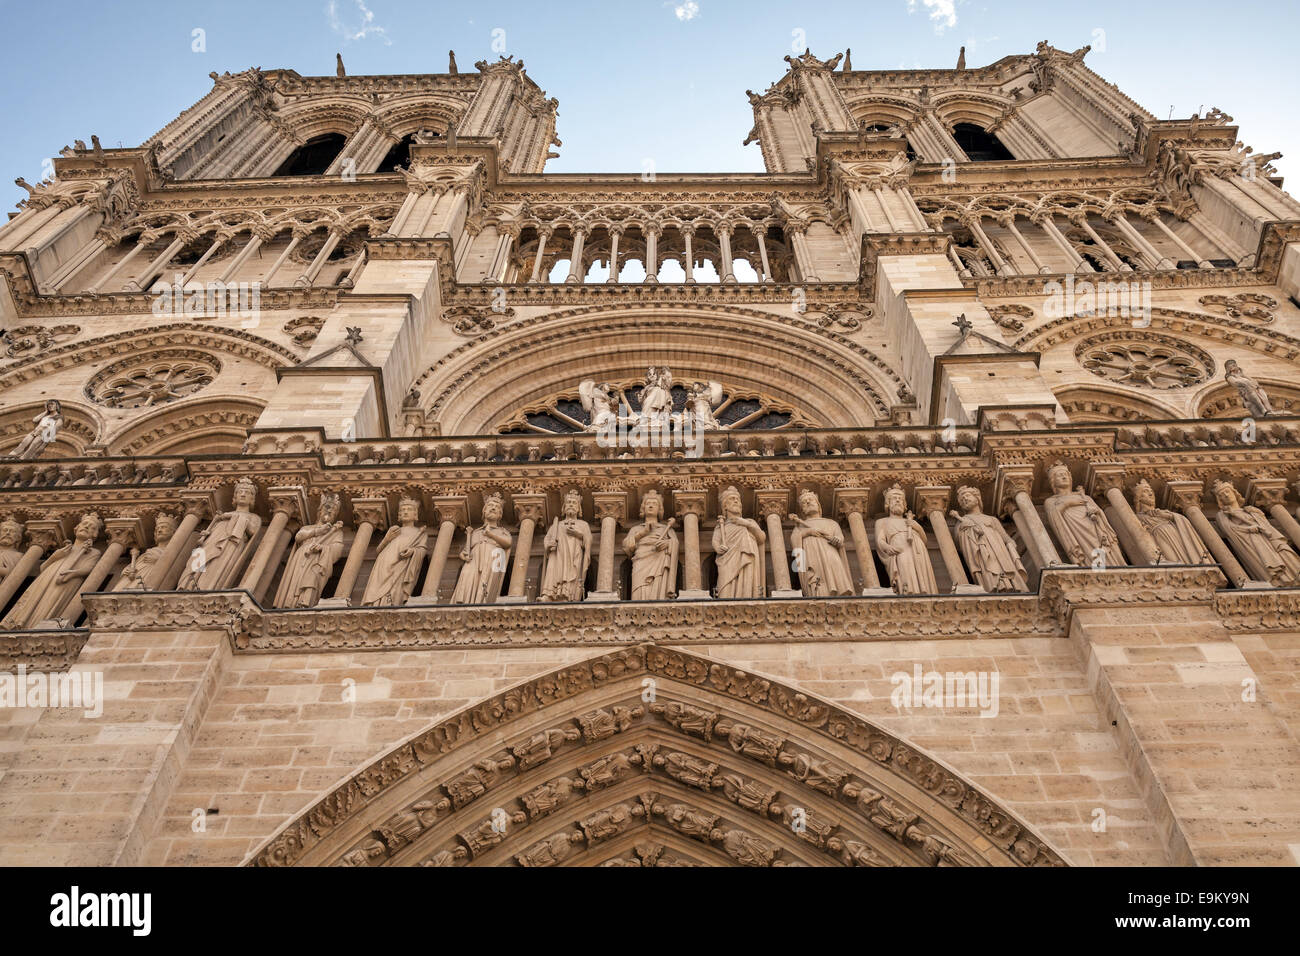 Façade de la cathédrale Notre Dame de Paris, France Banque D'Images